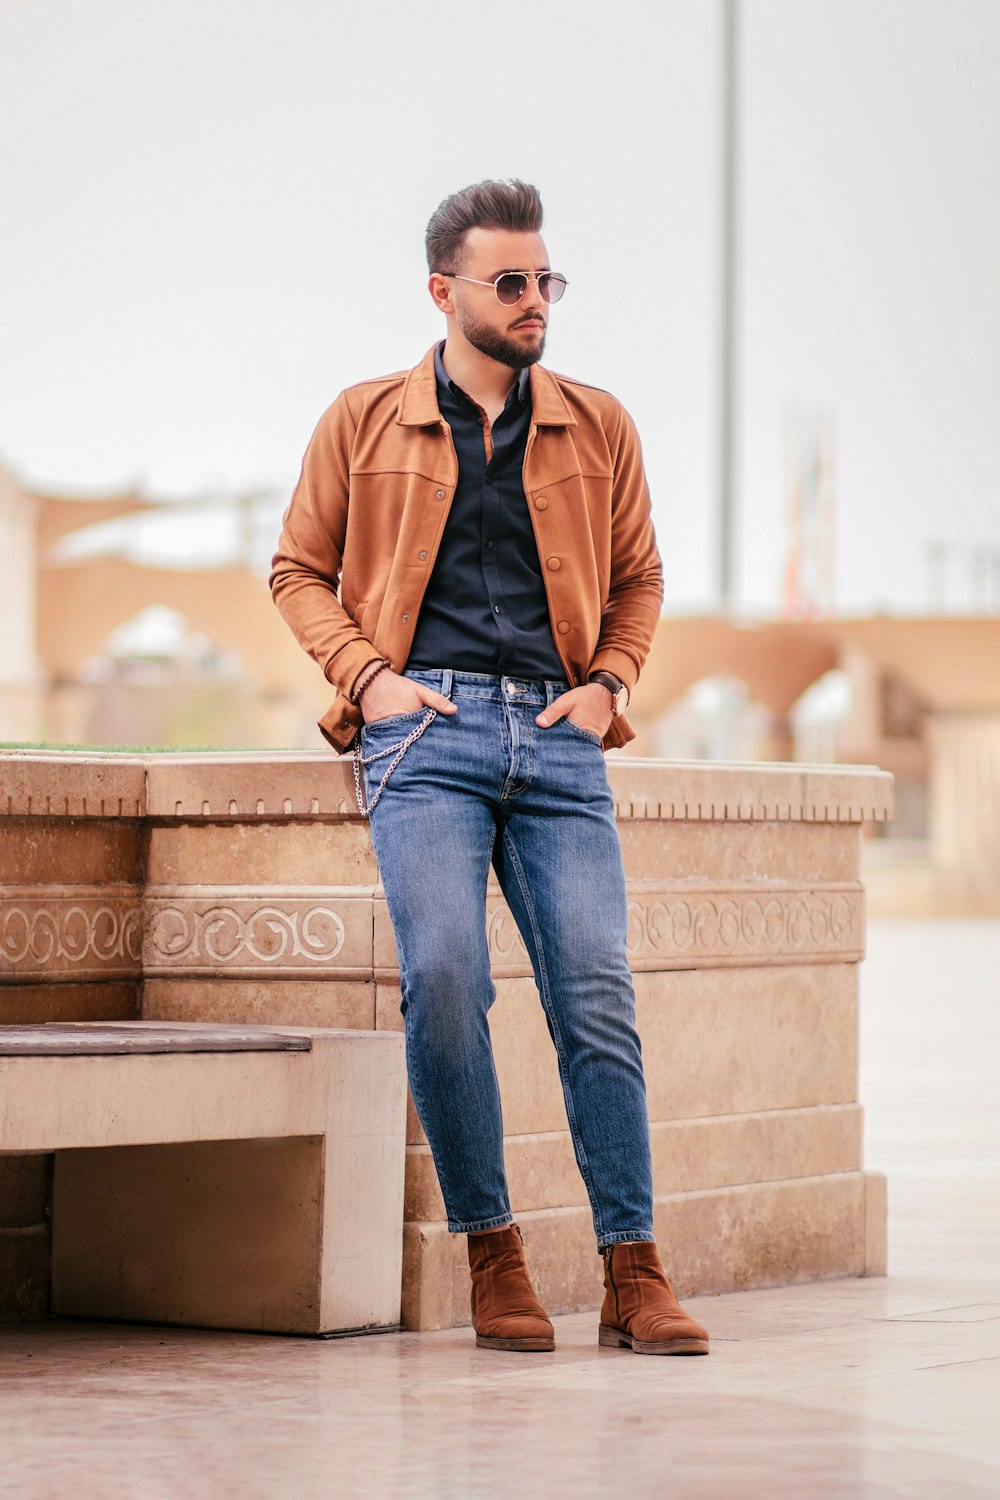 Homme en veste marron et jean bleu assis sur un banc en béton brun pendant la journée